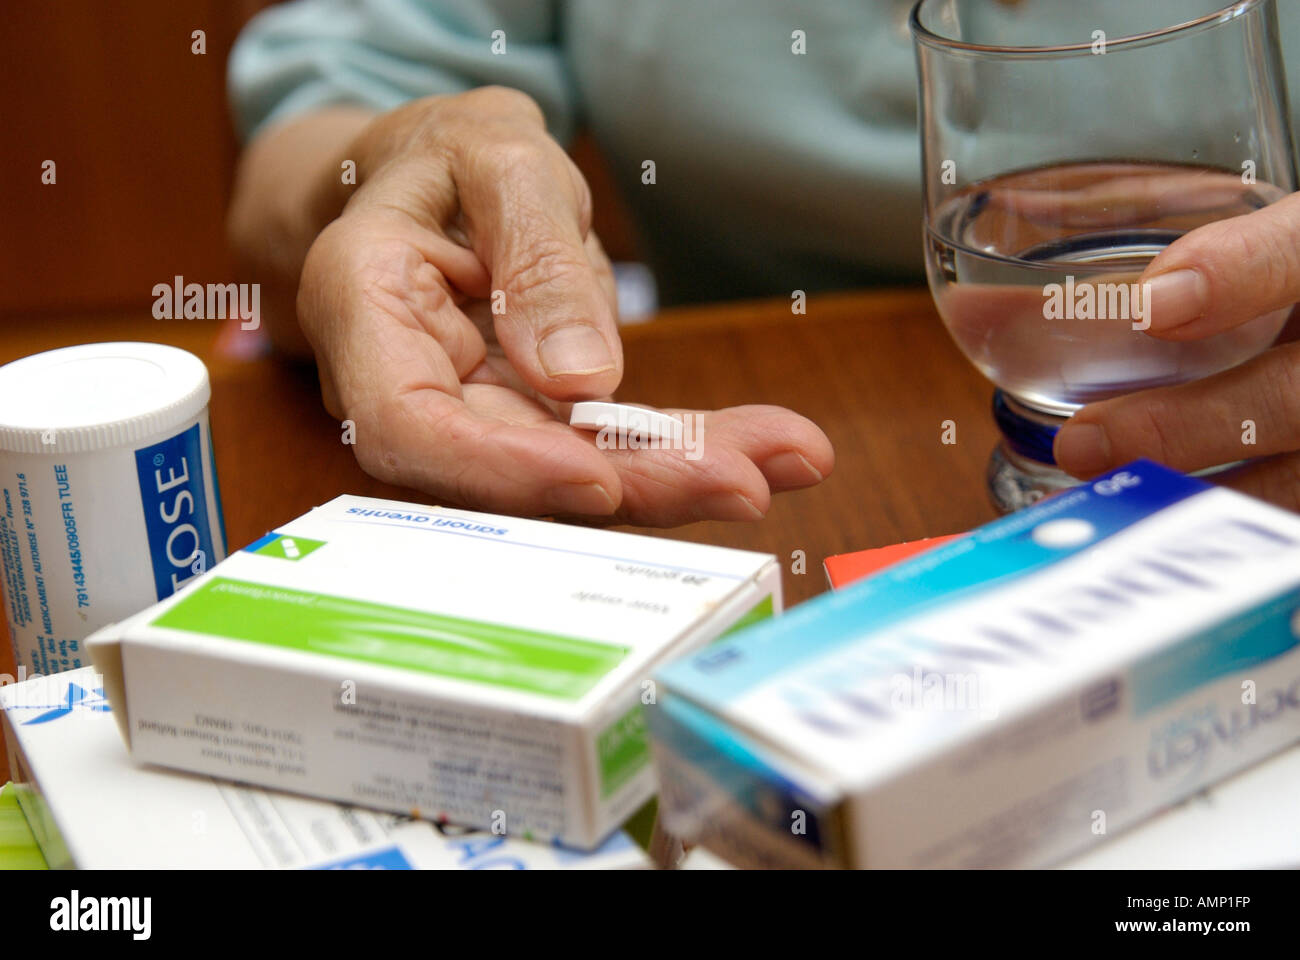 Le mani di una donna anziana tenendo una pillola e un bicchiere d'acqua circondato da scatole di lei la prescrizione di farmaci Foto Stock